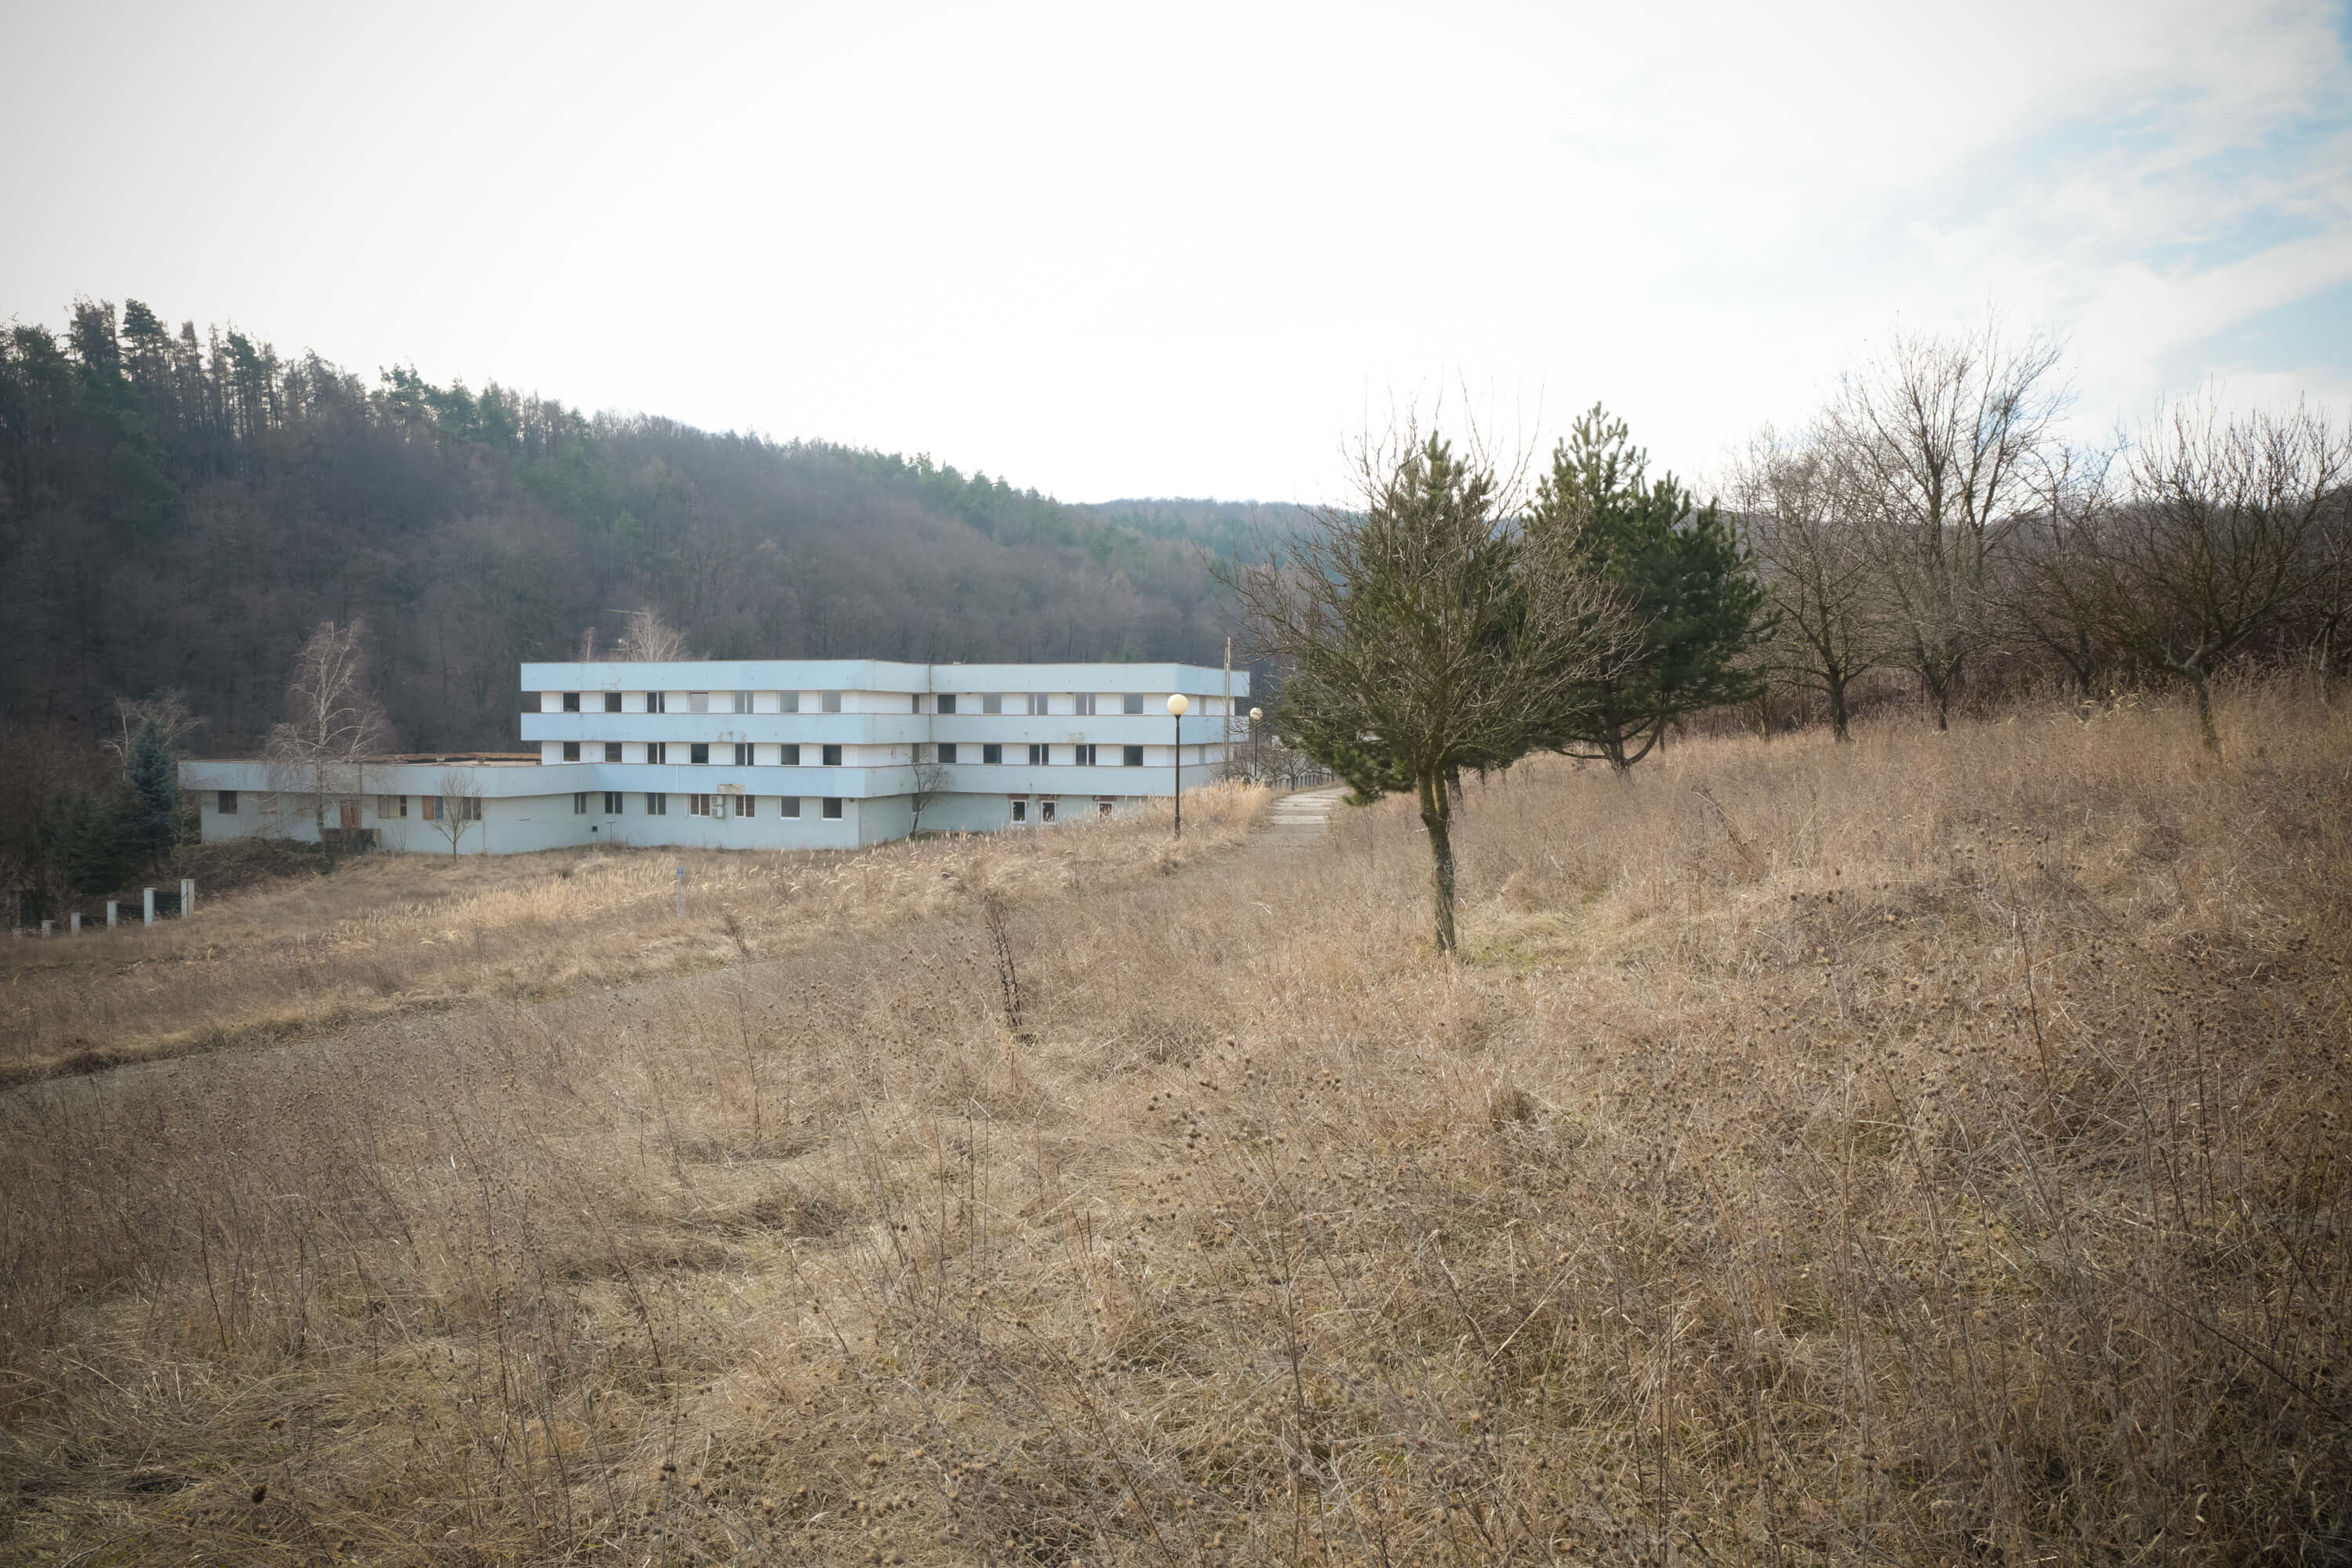 Predané: Zdravotnícke zariadenie,bývale sanatórium,komplex na predaj, Limbach, Potočná ulica, pozemky 21164m2, úžitkova spolu 3159m2-8